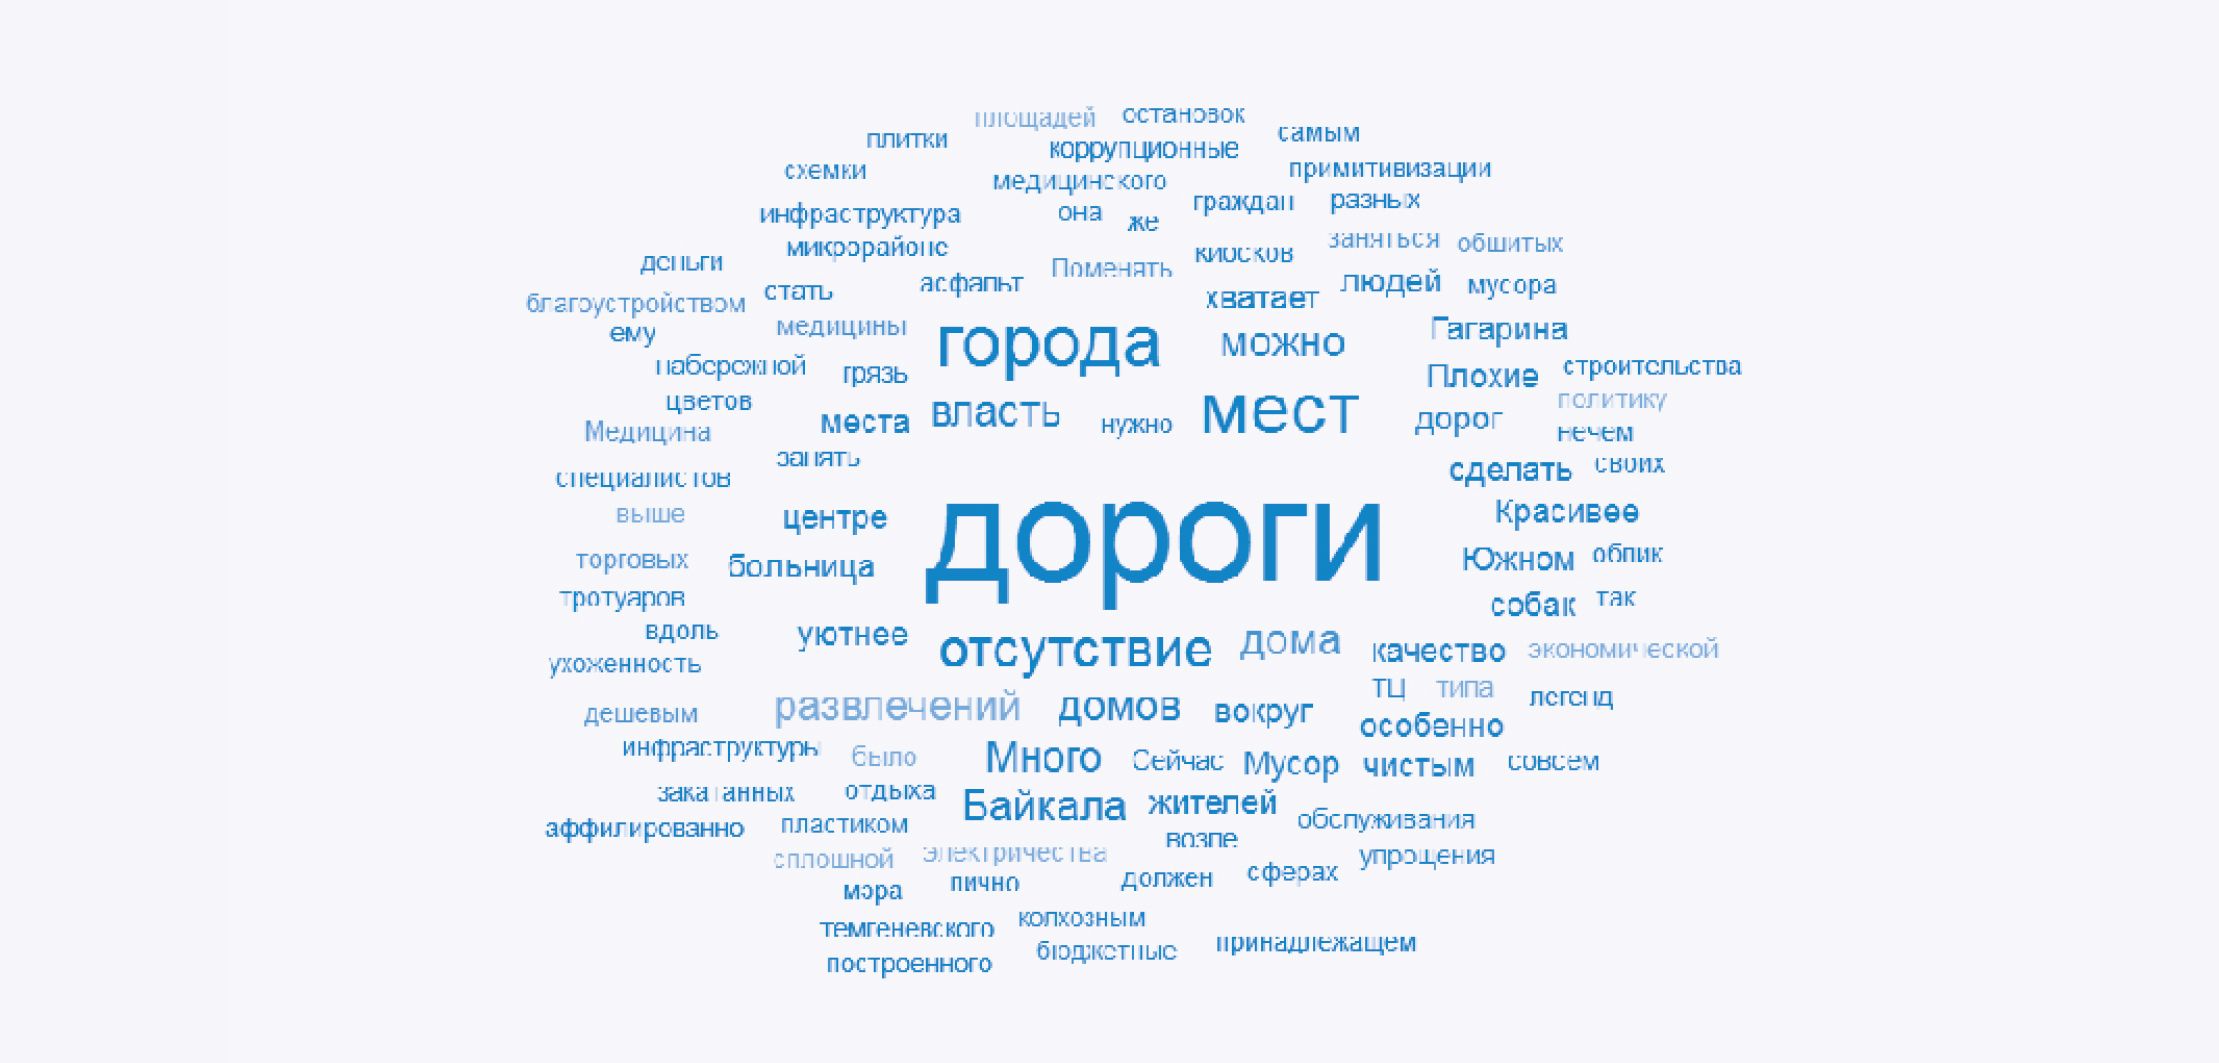 Облако тегов по результатам опроса: Что вам больше всего не нравится в Байкальске? Что бы вы хотели поменять?